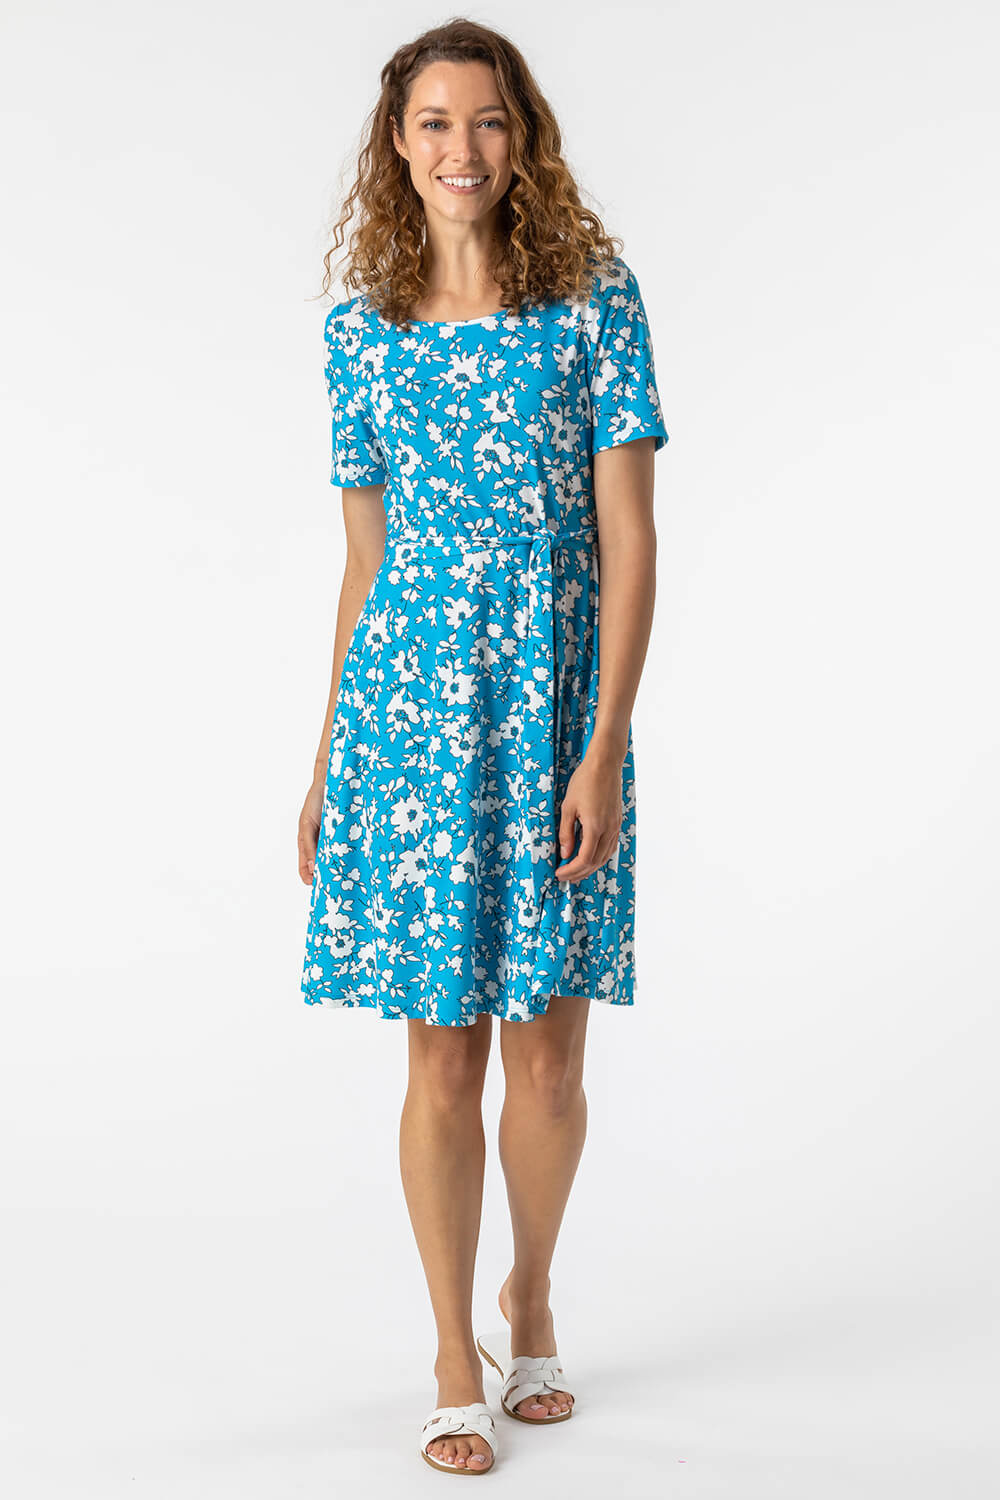 Blue Floral Print Belted Skater Dress , Image 4 of 5